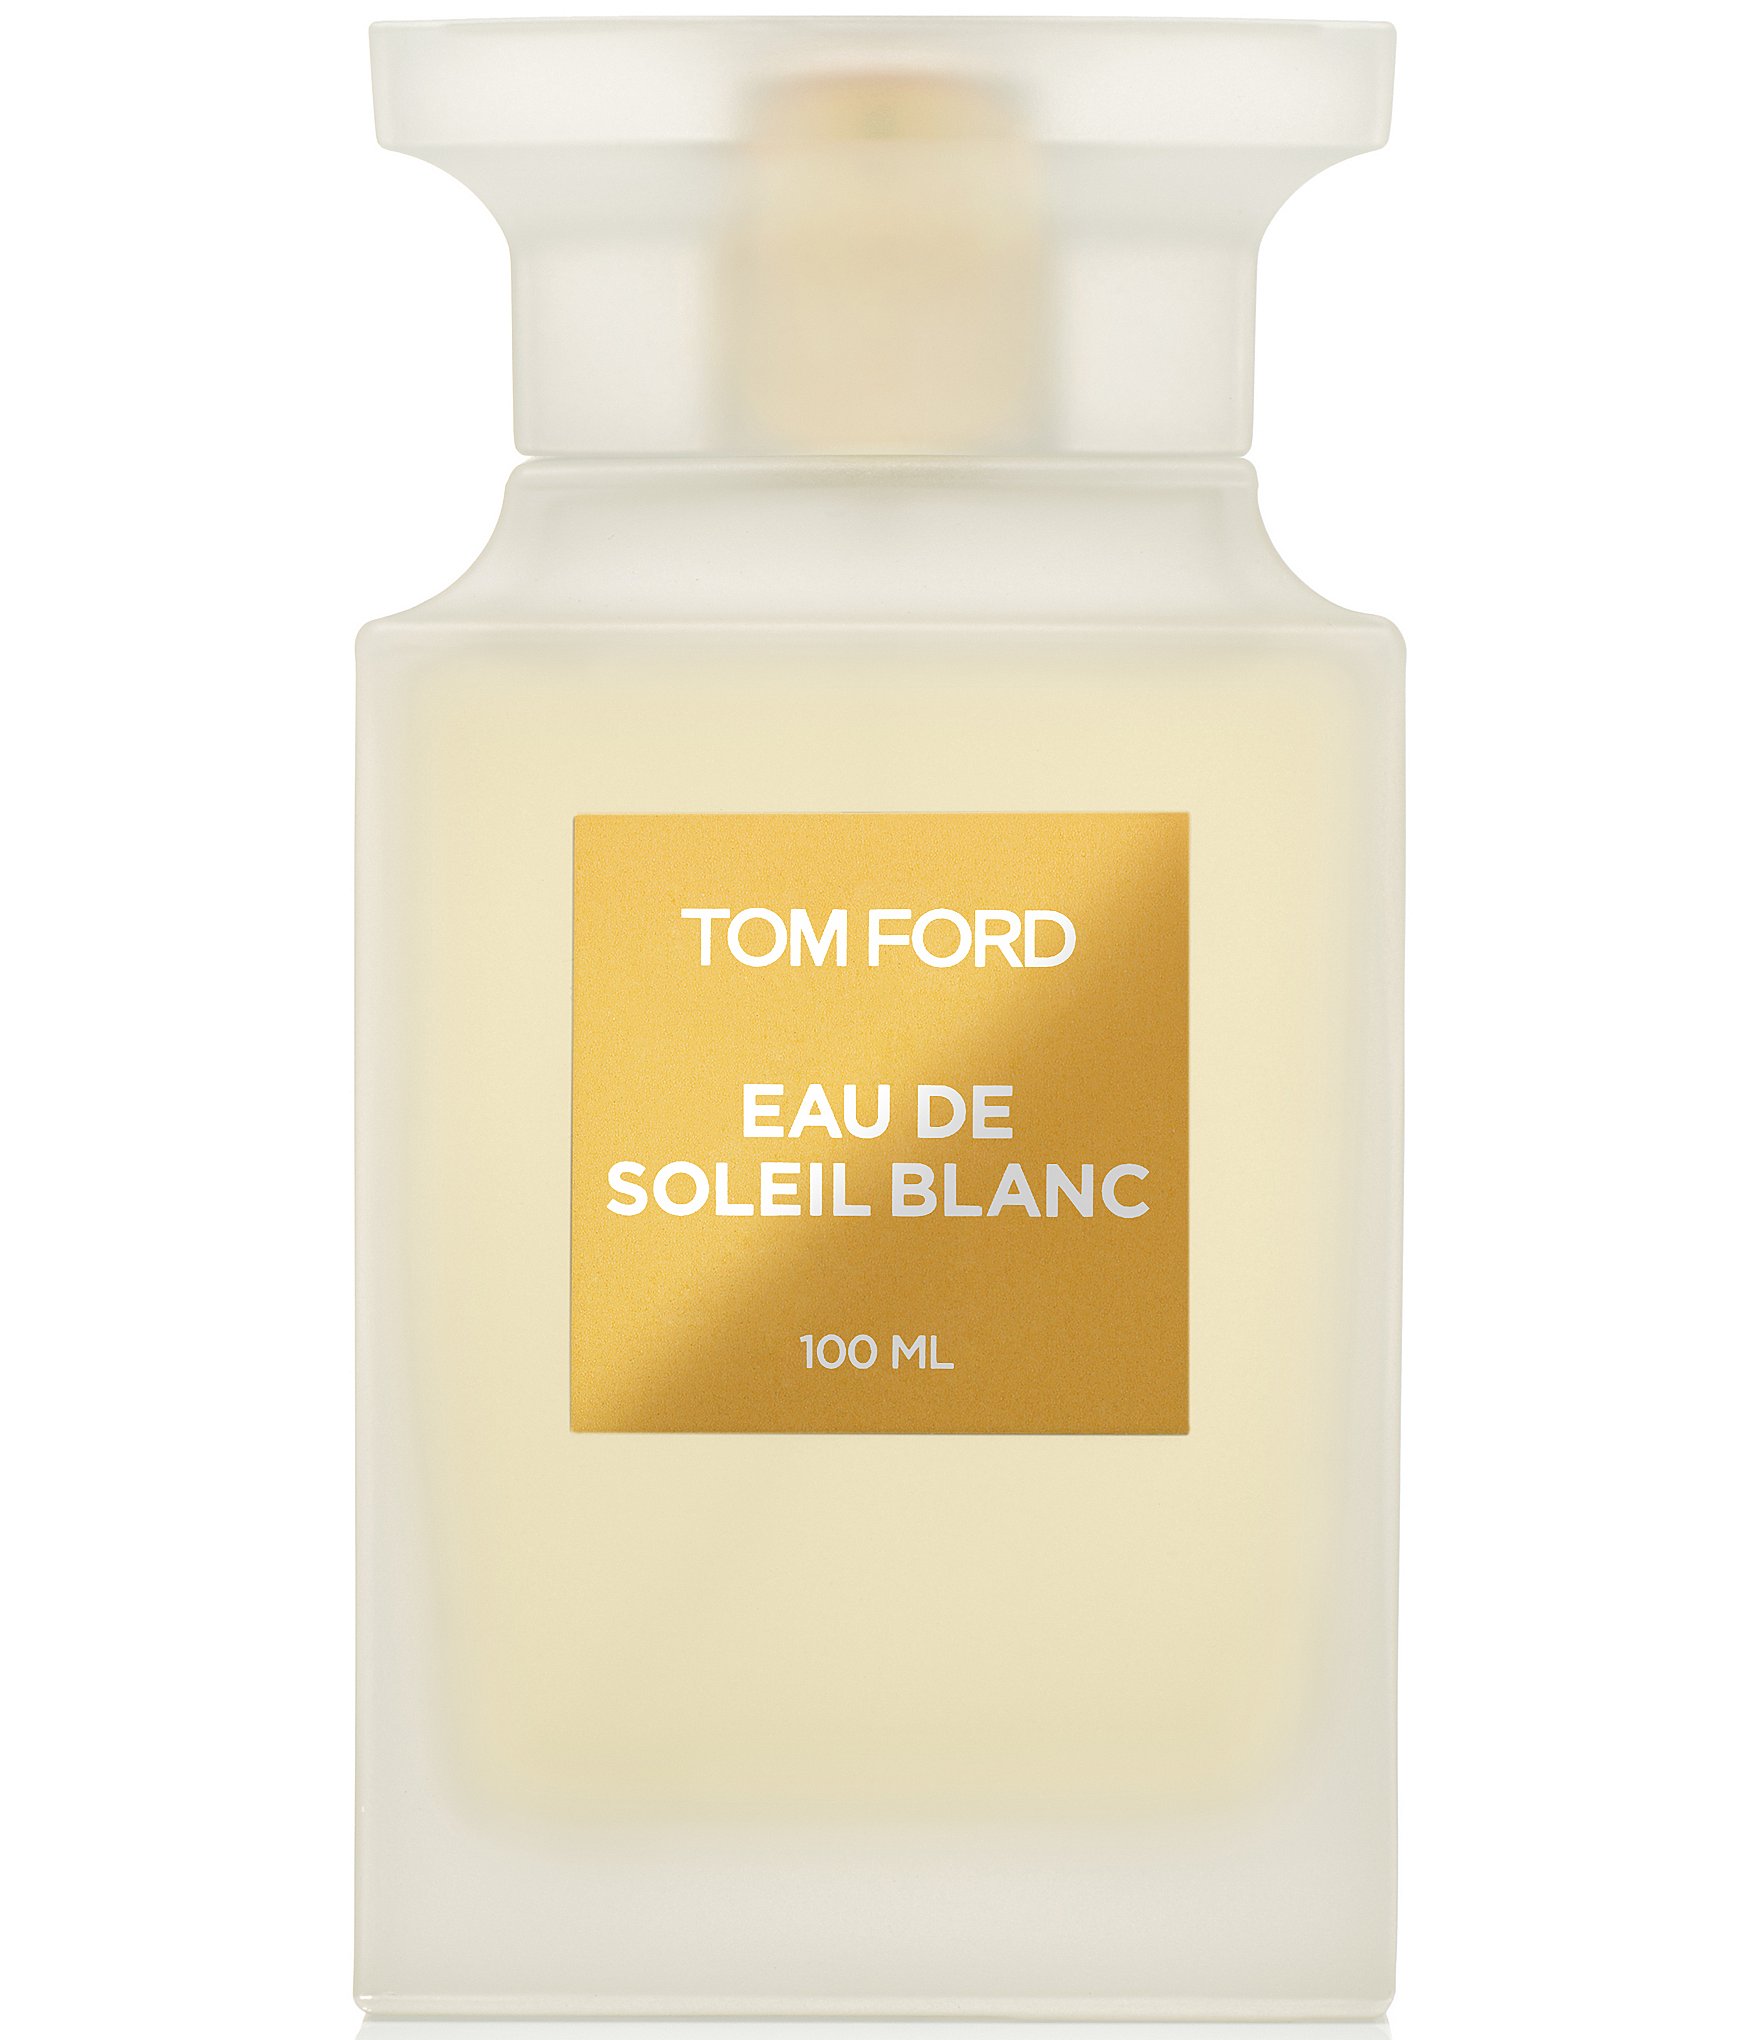 Tom Ford Eau de Soleil Blanc Travel Spray - 10 ml